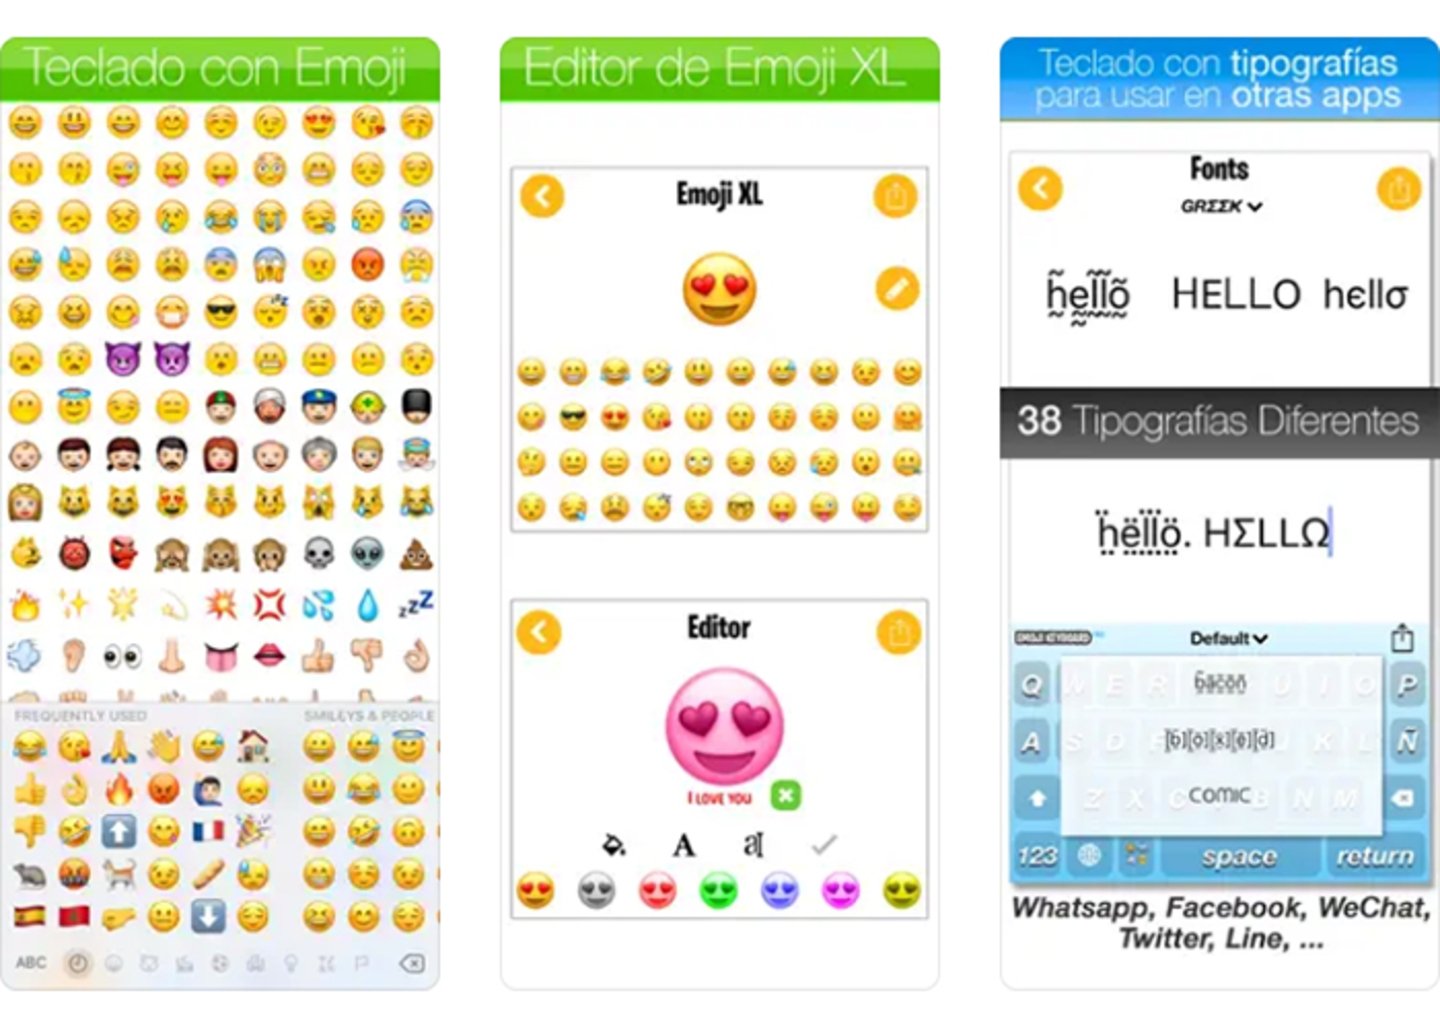 Emoji Keyboard un teclado lleno de emojis para expresarte sin limites